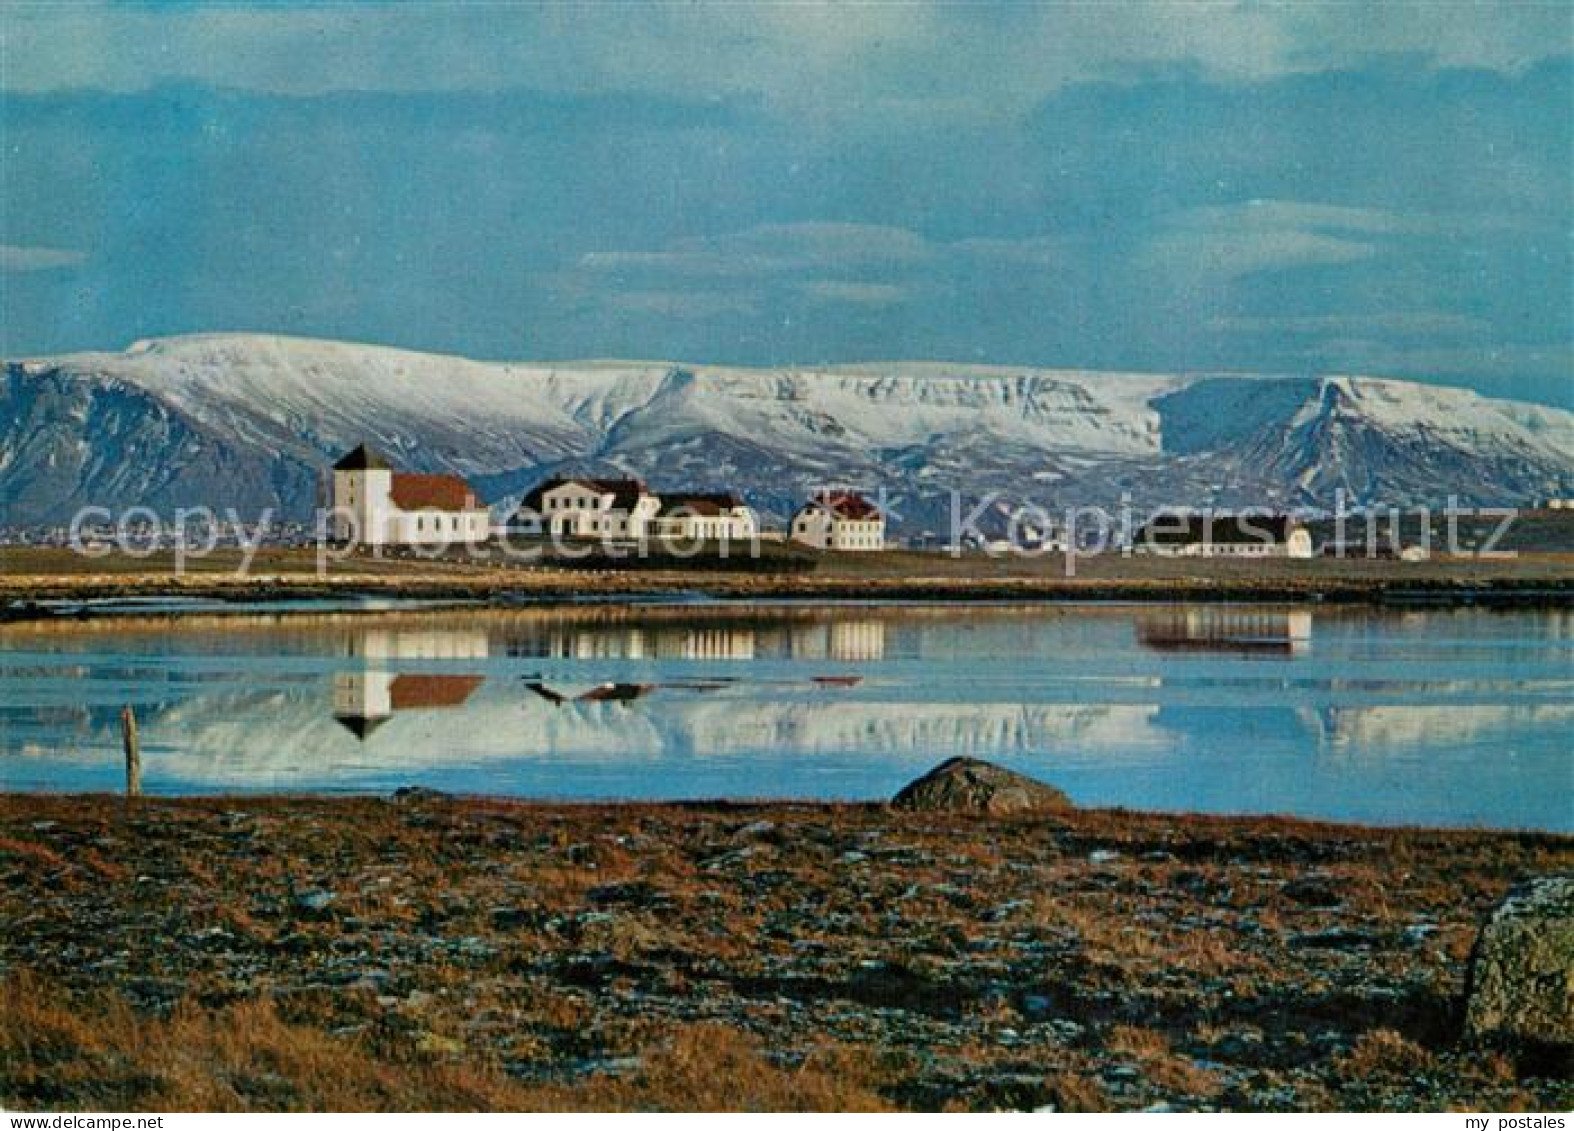 73601577 Gardabaer Bessastadir The Residence Of The President Of Iceland Mt Esja - Island